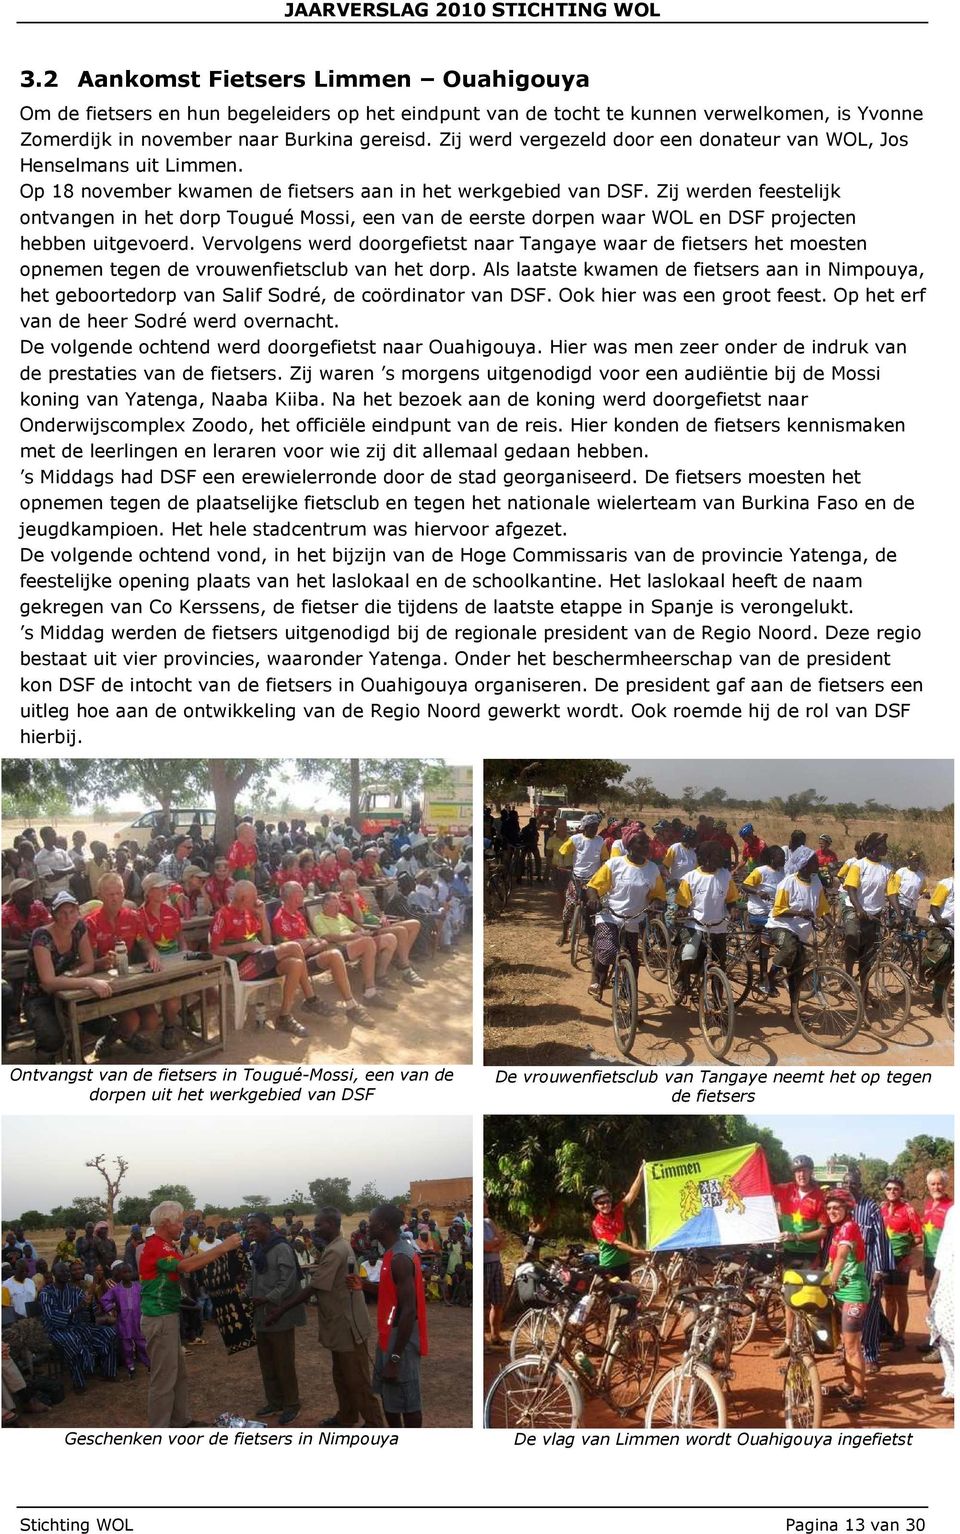 Zij werden feestelijk ontvangen in het dorp Tougué Mossi, een van de eerste dorpen waar WOL en DSF projecten hebben uitgevoerd.